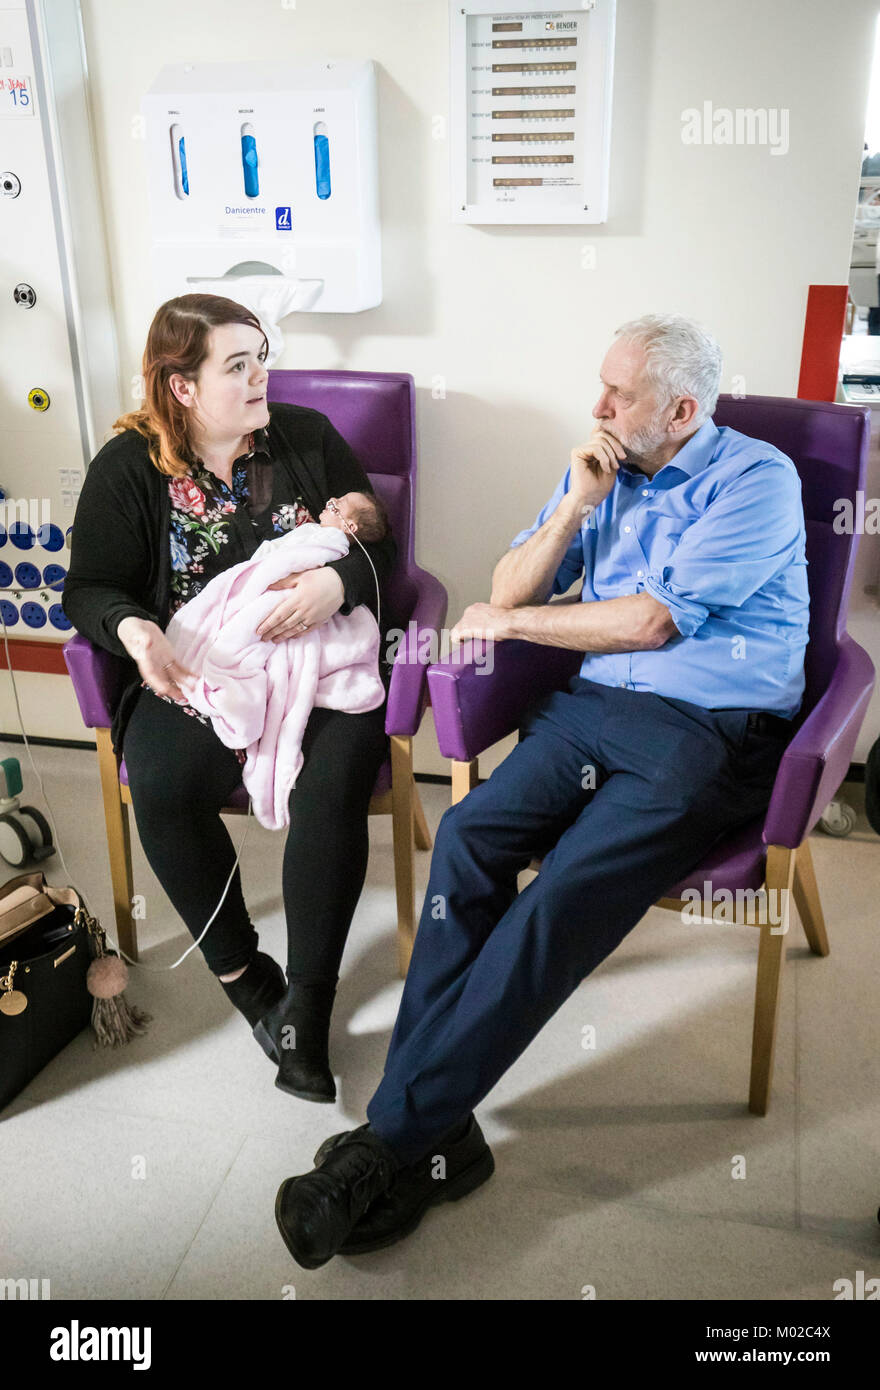 Leader du travail rencontre Jeremy Corbyn Ayesha Flannery et sa fille âgée de deux semaines sur l'Polly-Jean Flannery Unité postnatale dépendance élevée au cours d'une visite à l'Hôpital du comté de Lincoln, où il a mis en relief les souches d'hiver dans le cadre du NHS. Banque D'Images